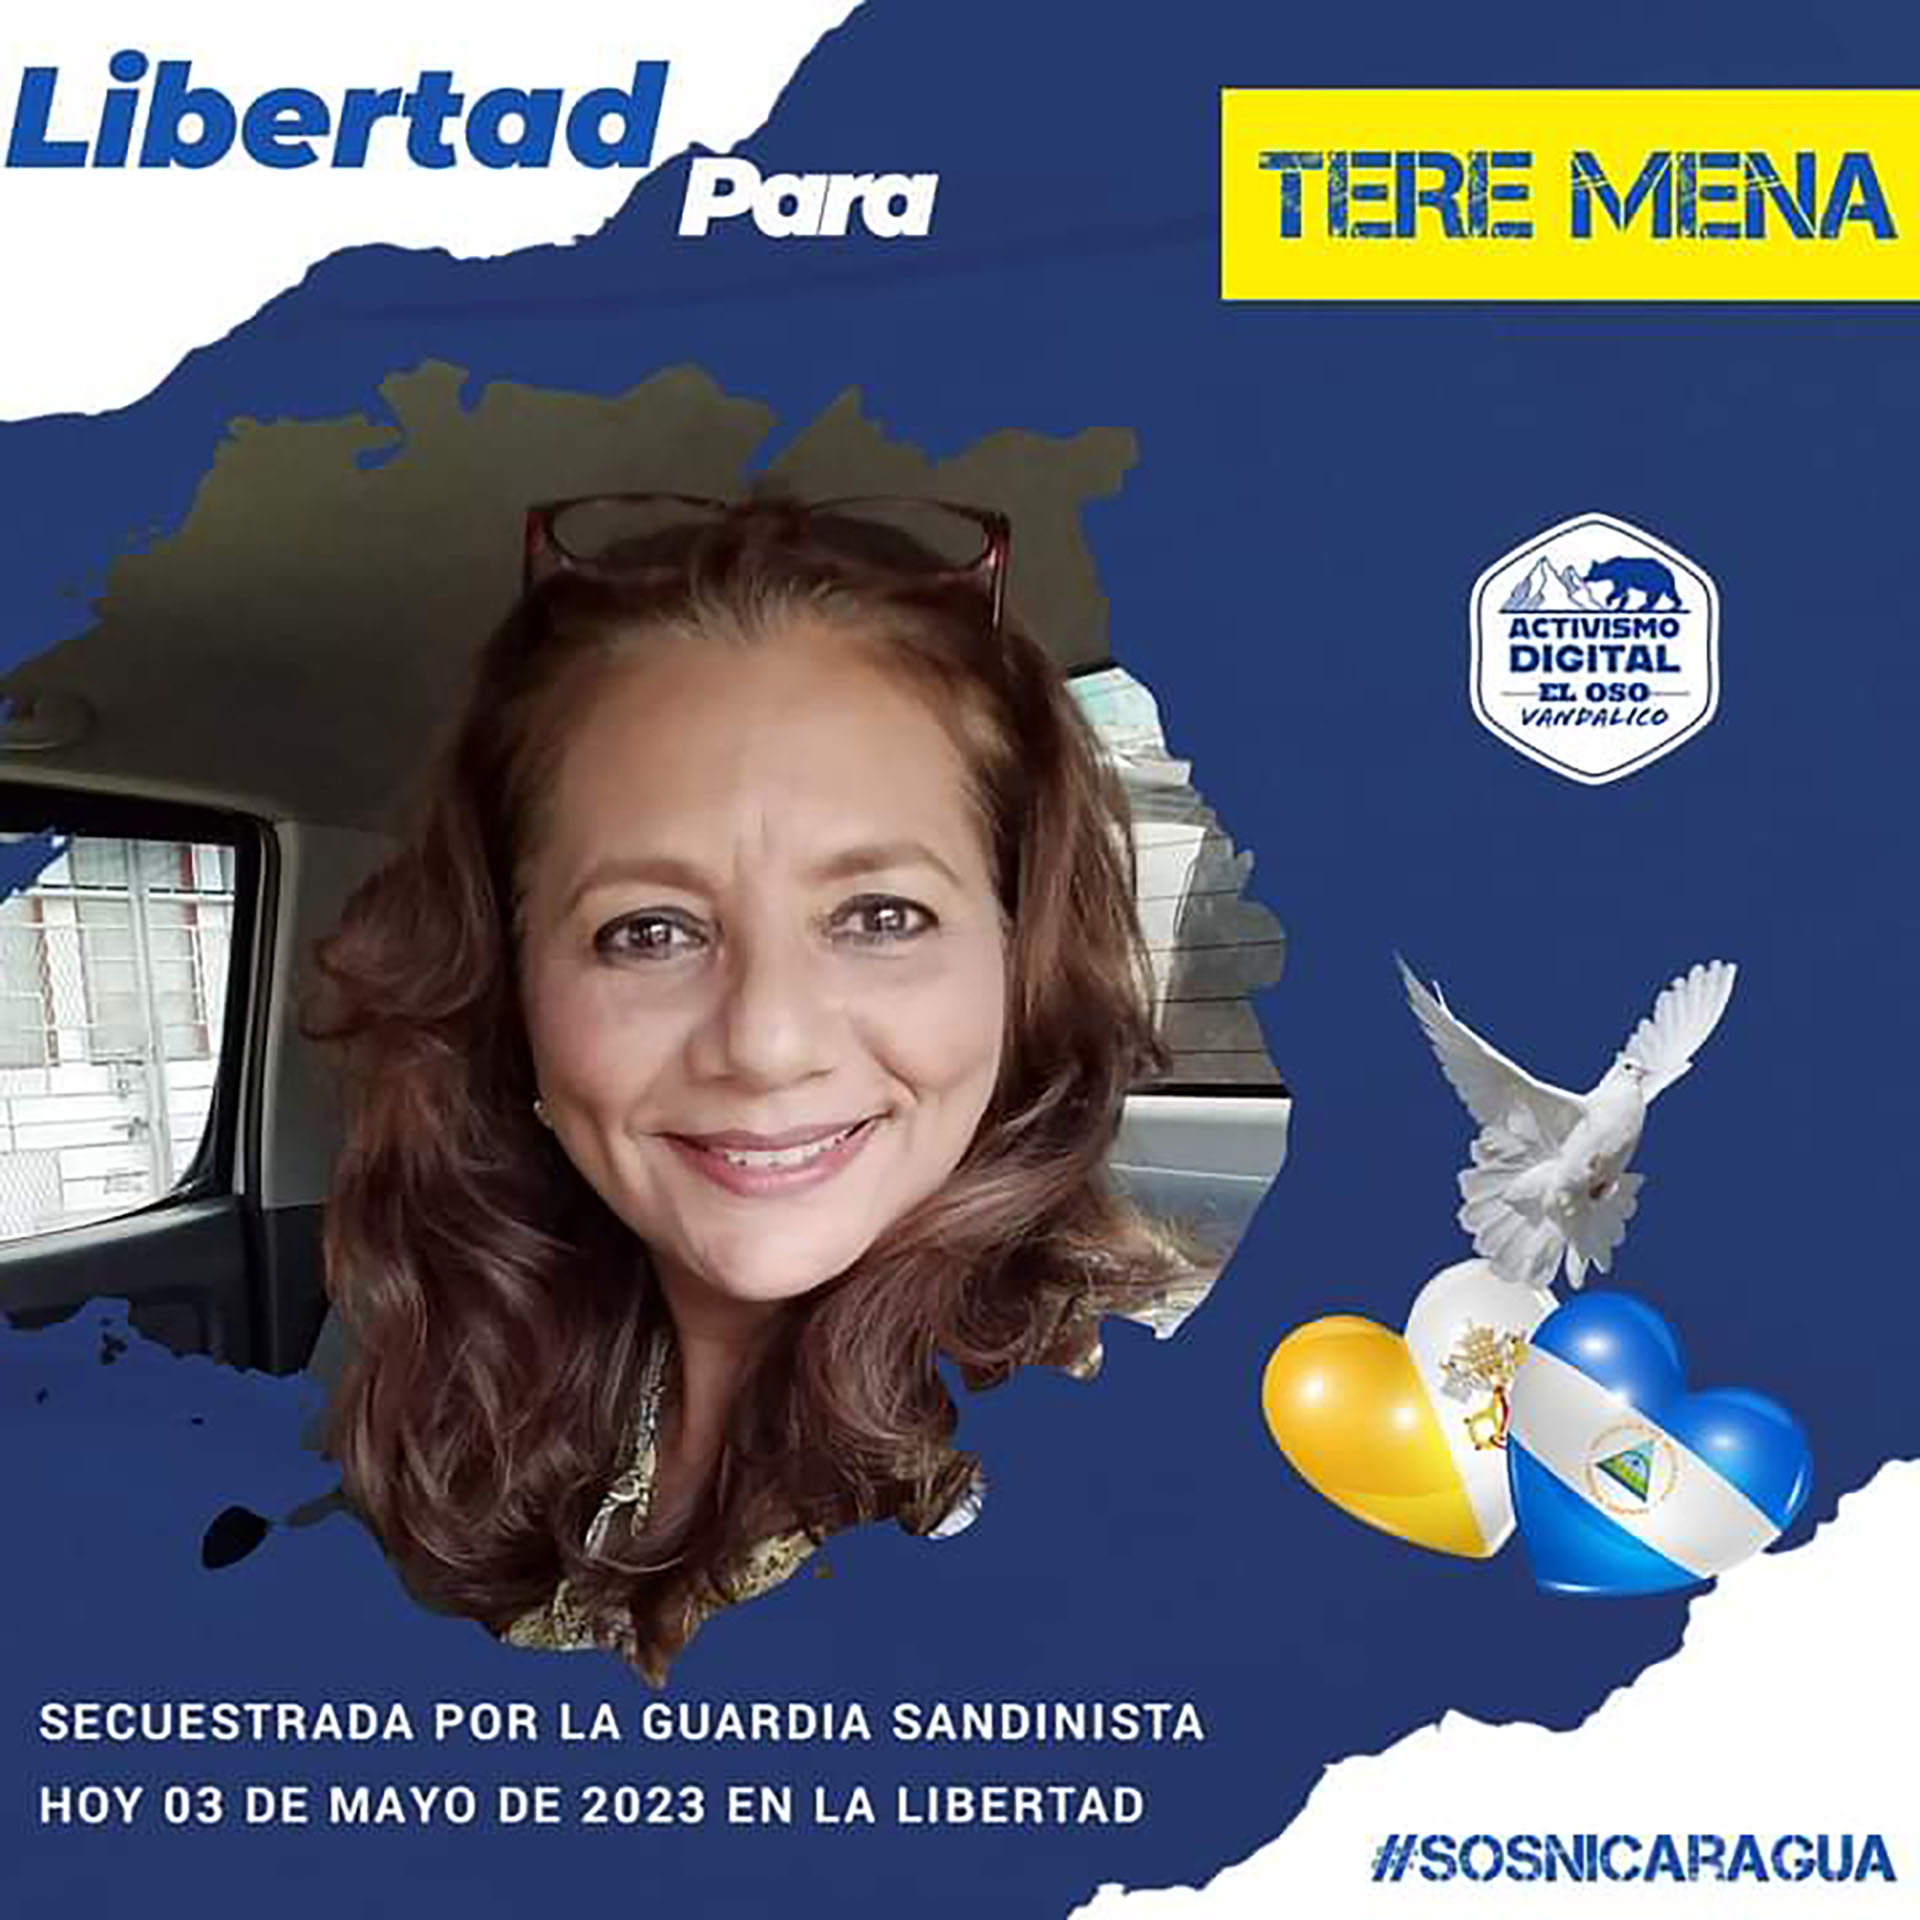 Teresa Mena